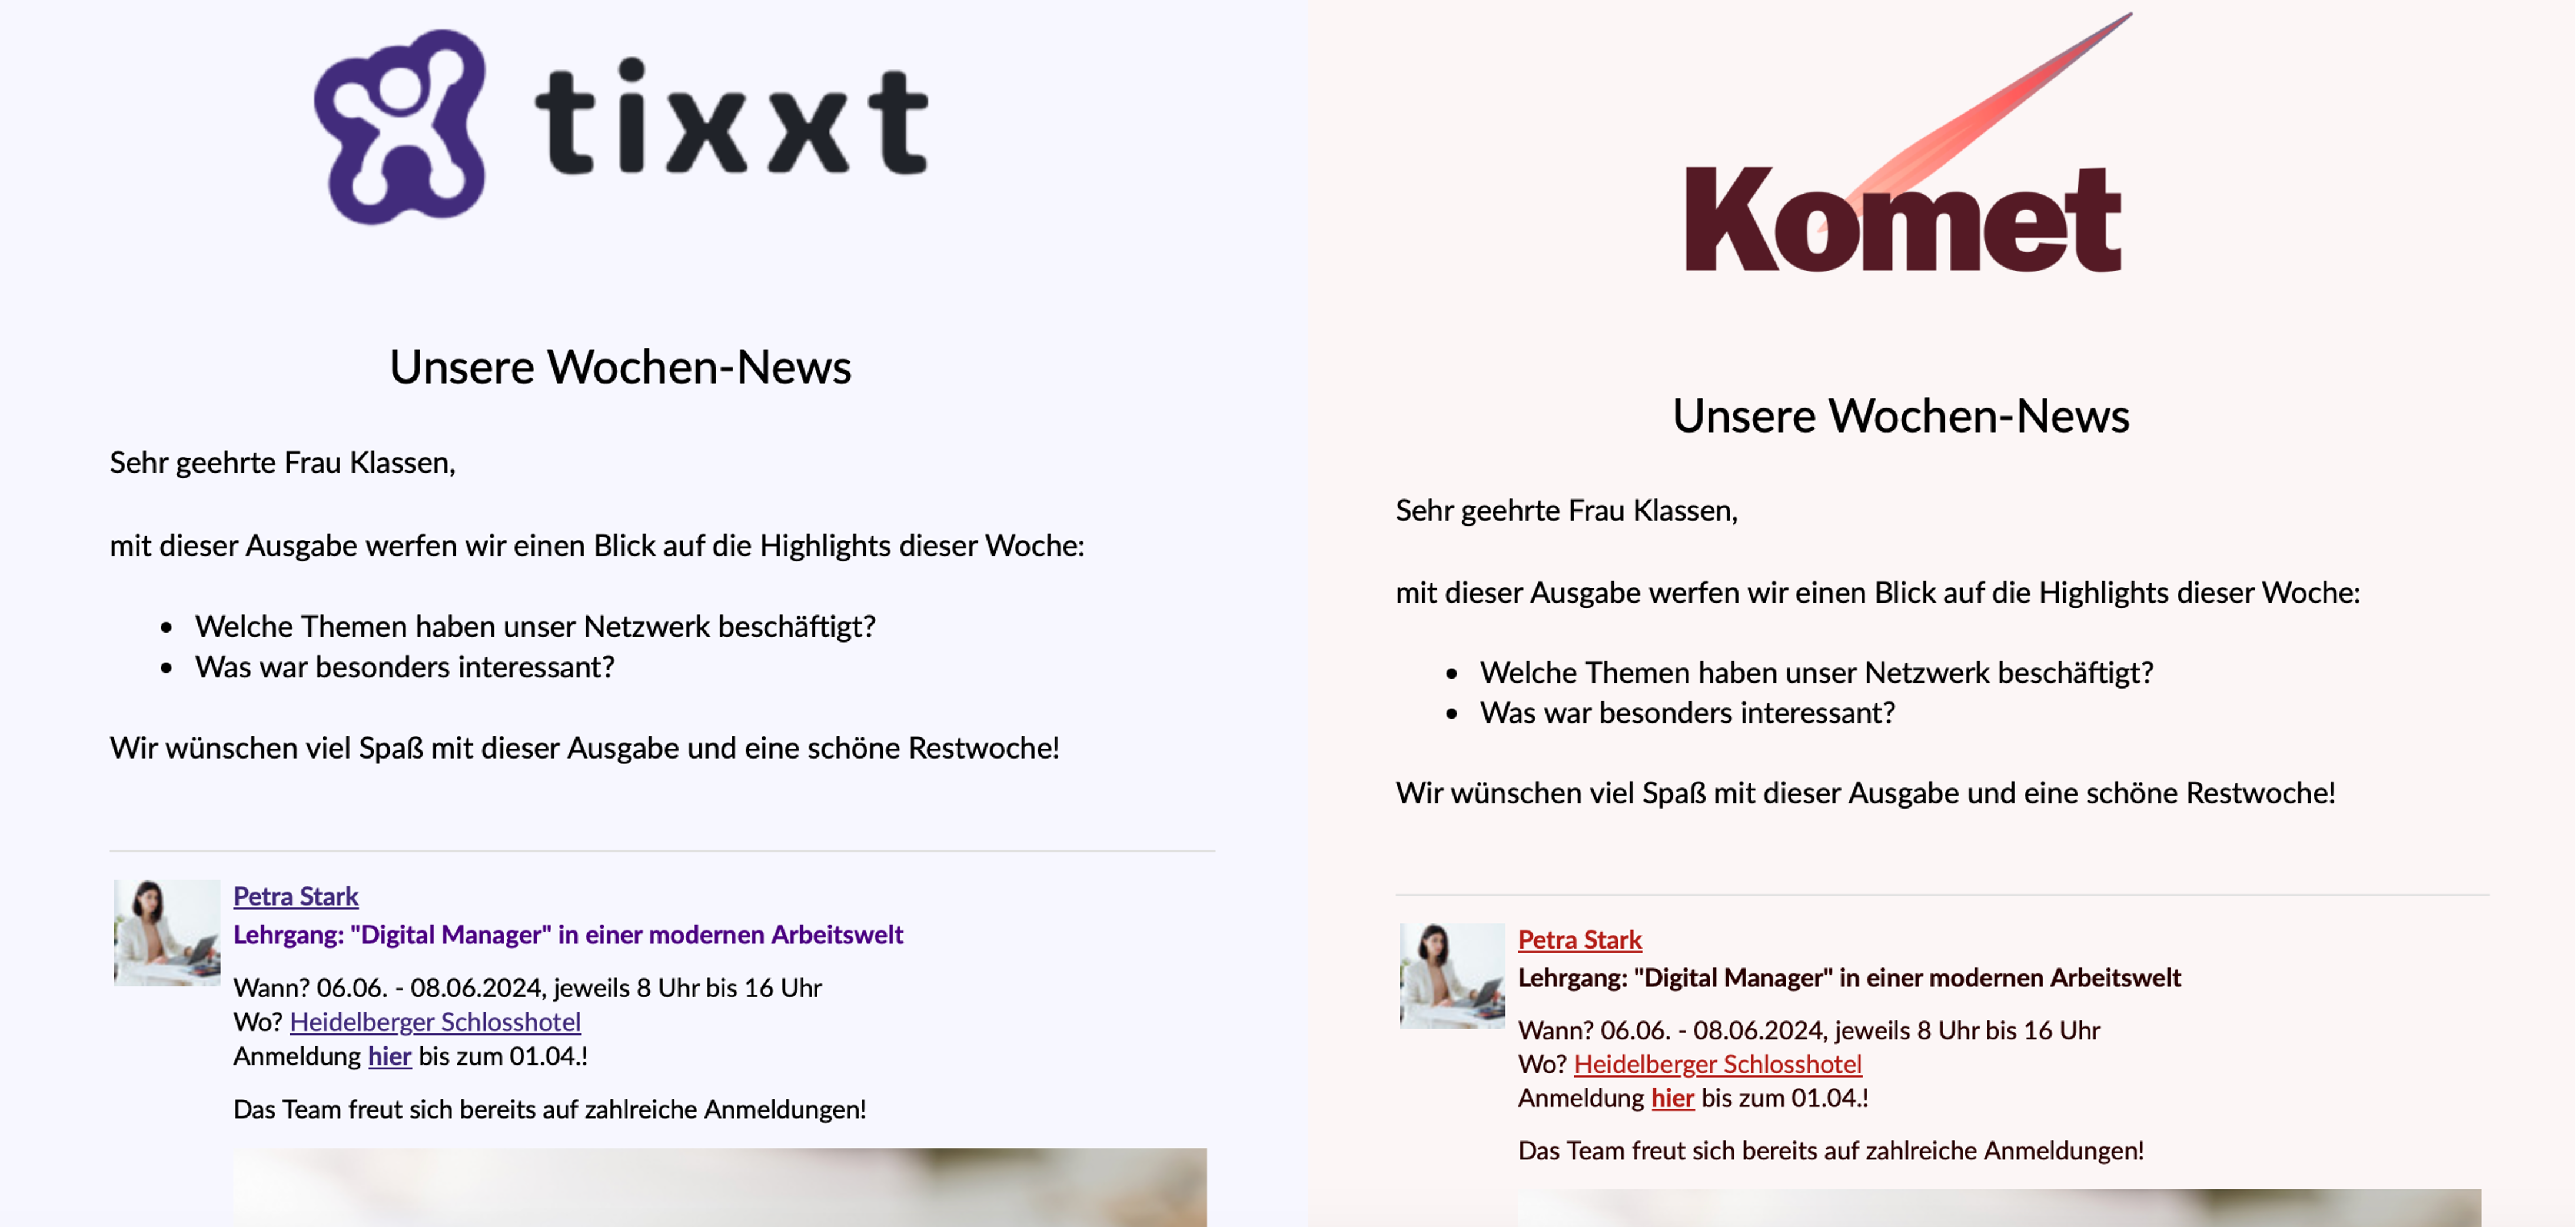 Vergleich einer tixxt-Newsletter-Vorlage und einer Beispiel-Vorlage in einem anderen Design.